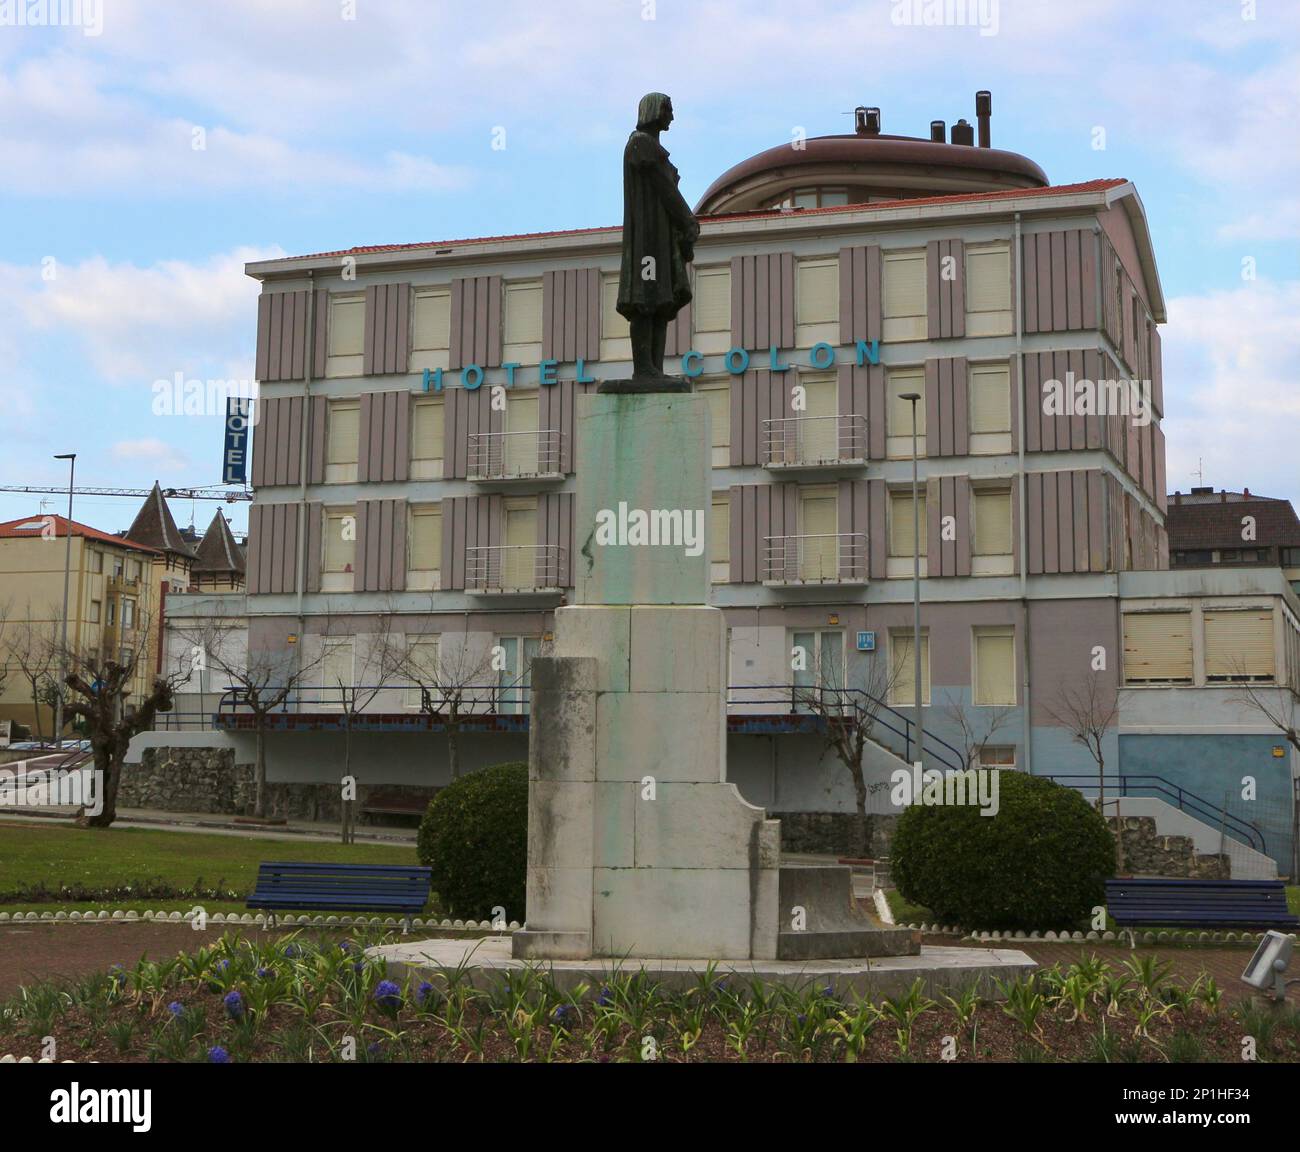 Statua di Cristoforo Colombo di fronte al chiuso Hotel Colon a Sardinero Santander Cantabria Spagna fuori dal business a causa delle crisi del virus covid Foto Stock